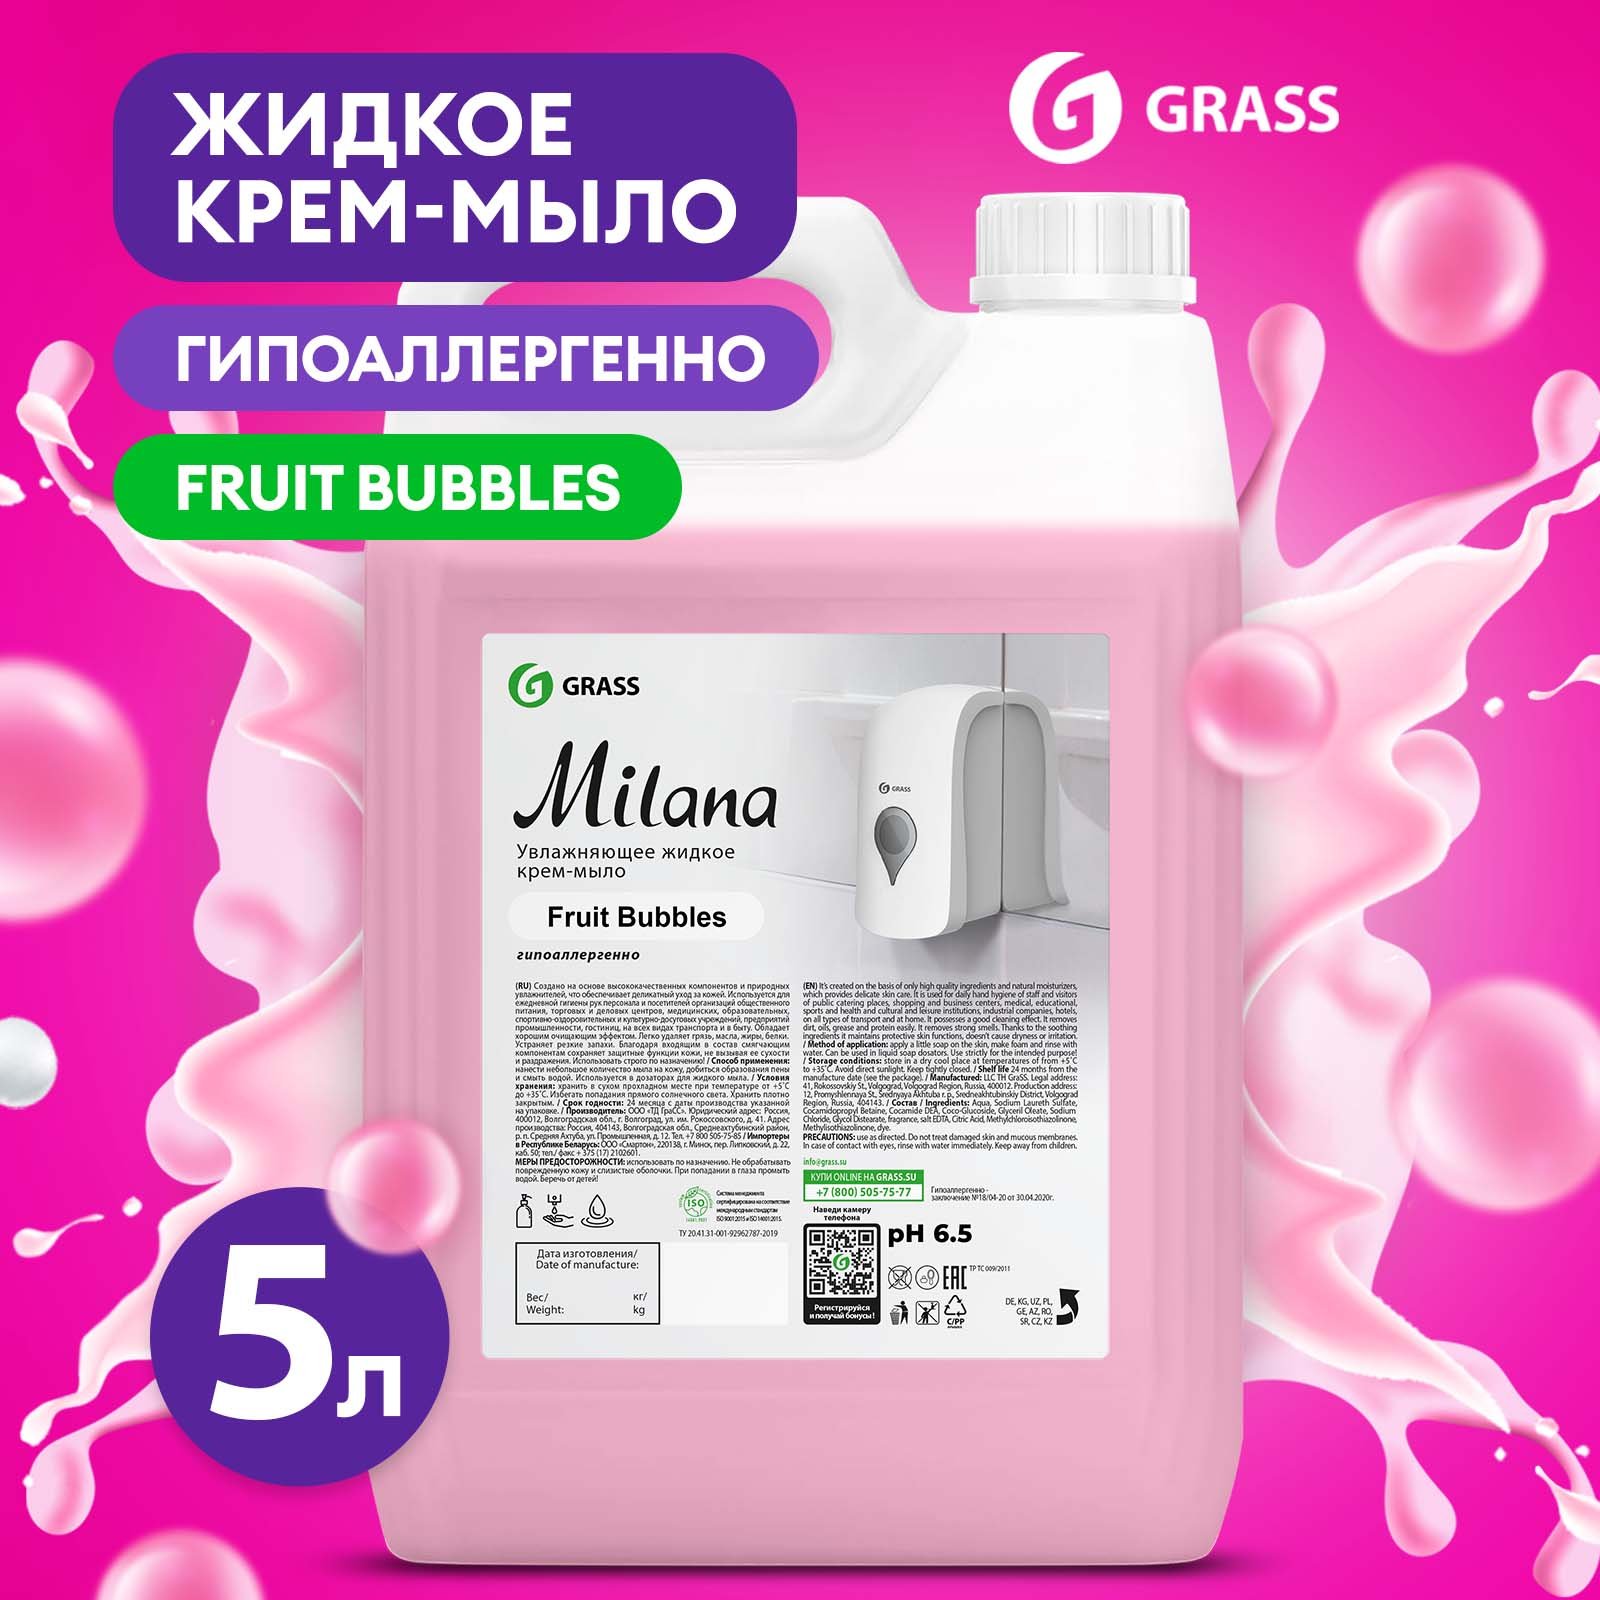 Мыло жидкое для рук Grass Milana Fruit Bubbles туалетное, густое, гипоаллергенное 5 л мыло жидкое для рук grass milana черешня туалетное густое гипоаллергенное 5 л